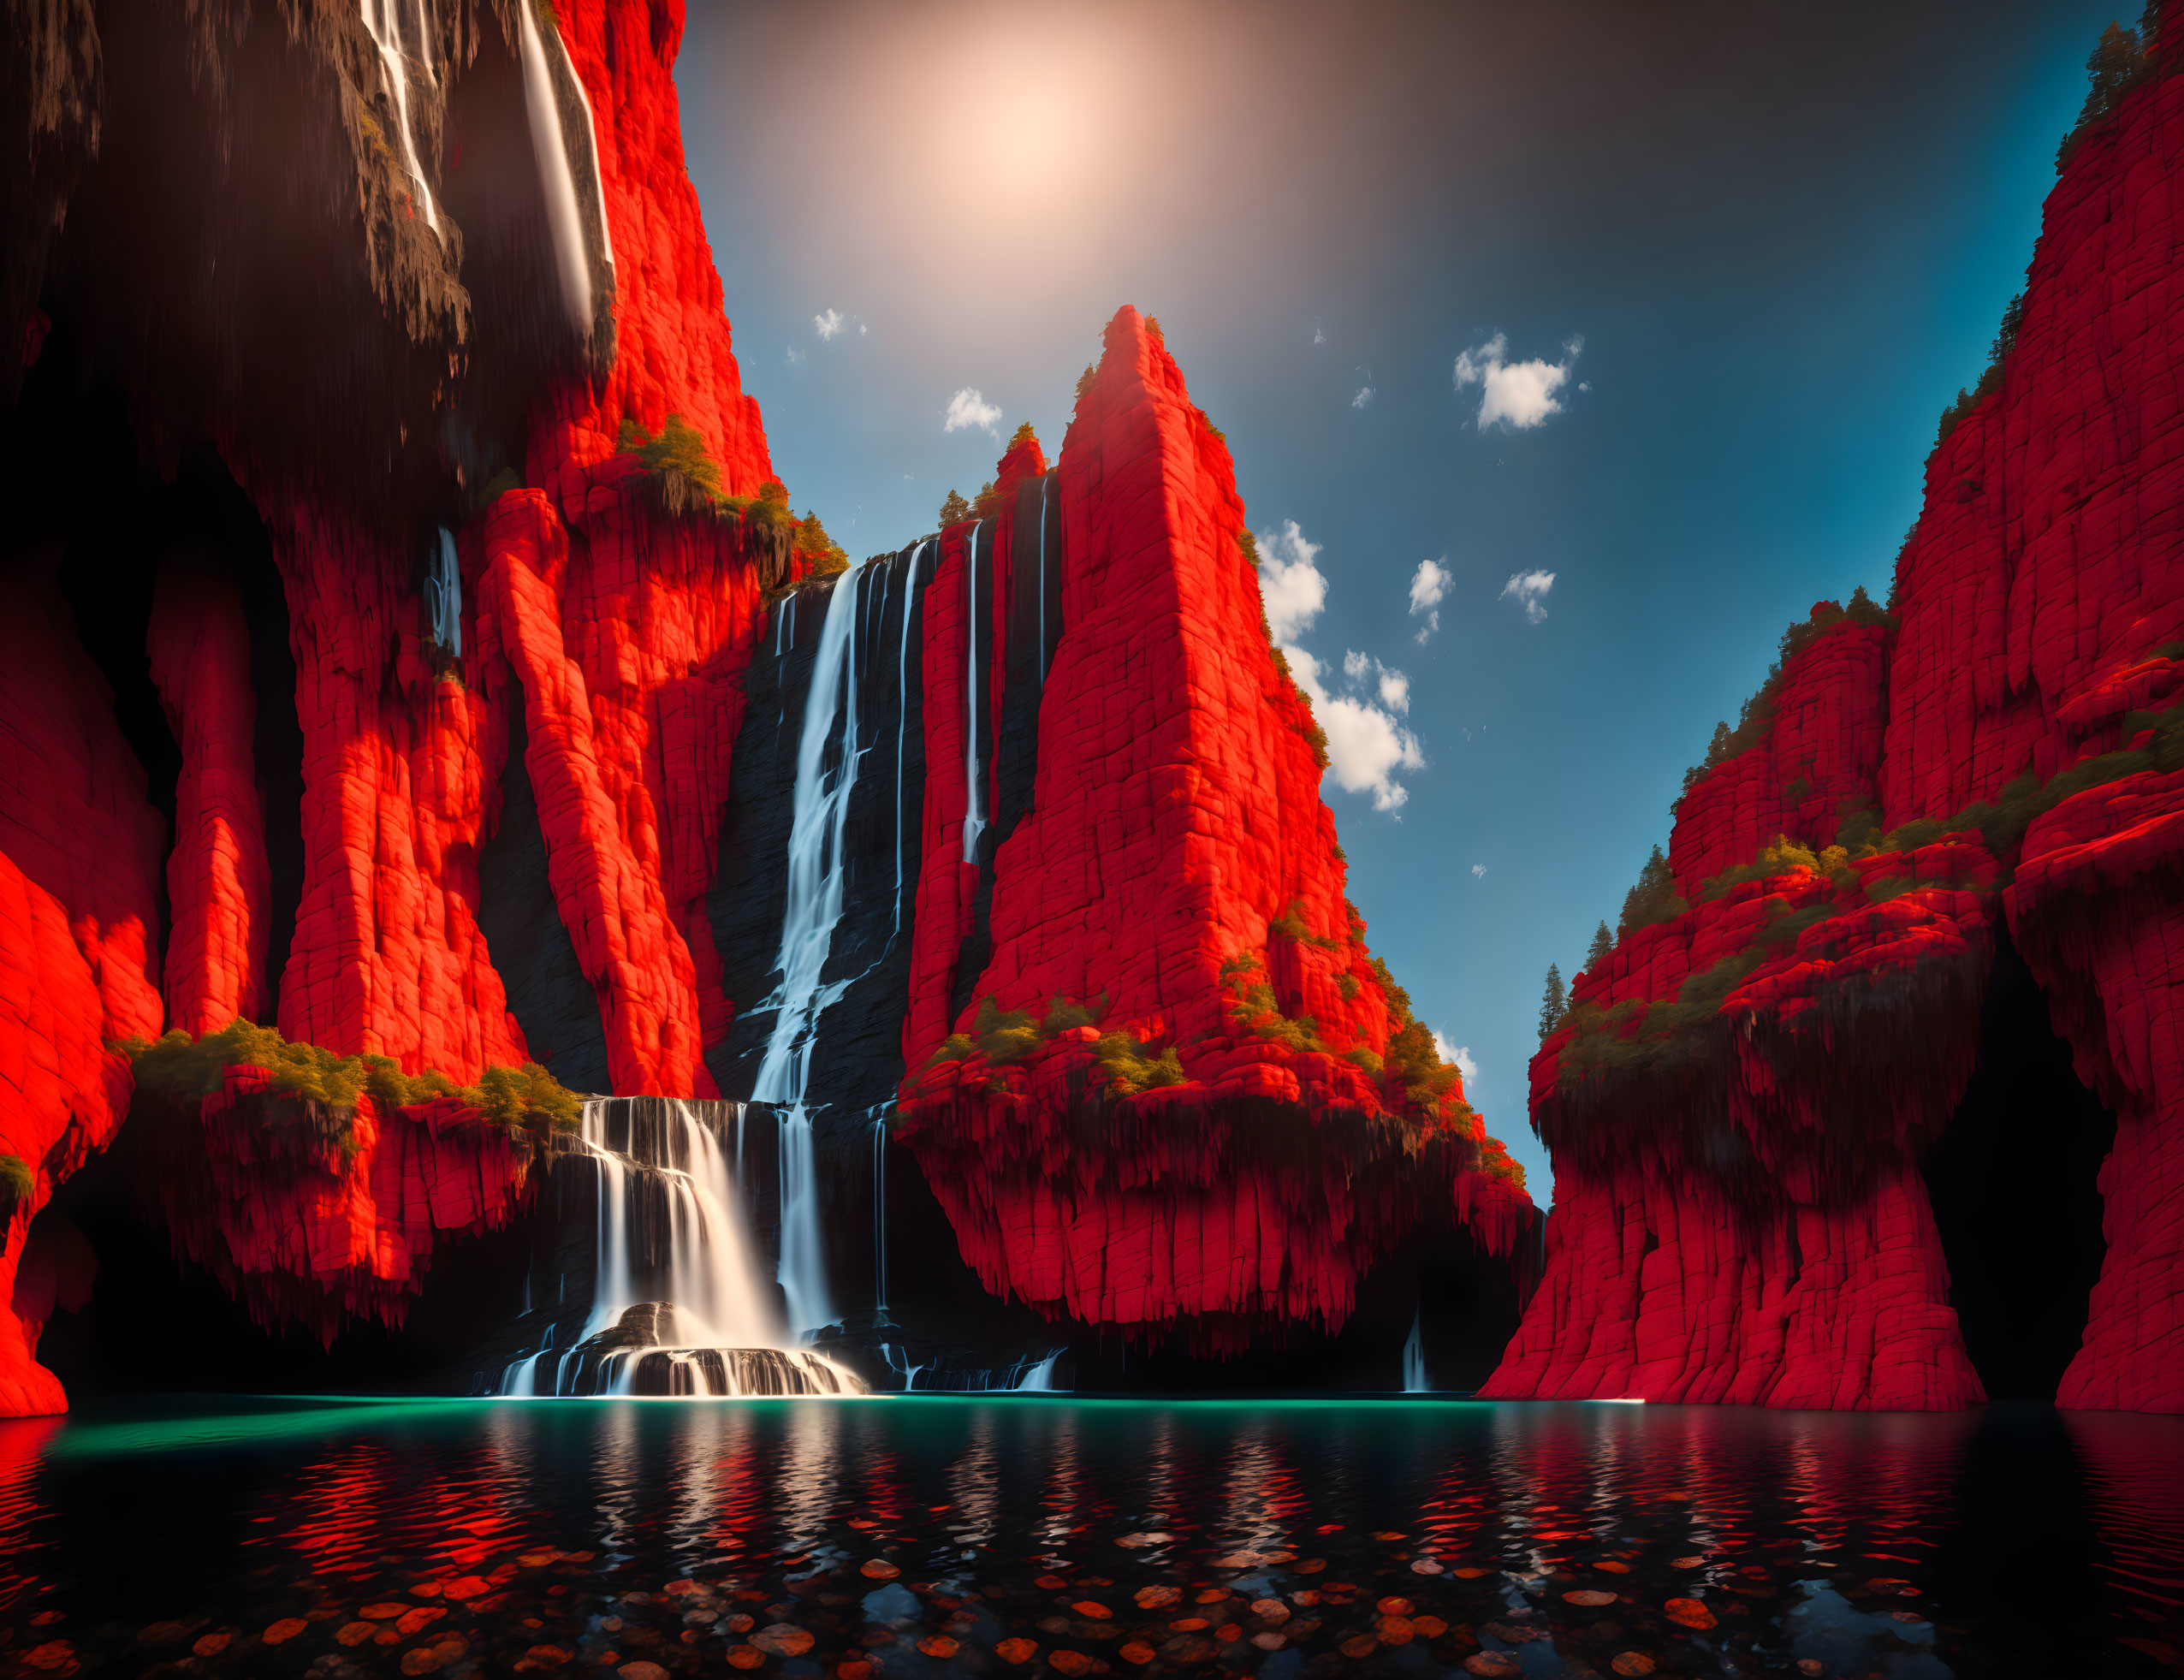 Vibrant digital artwork: Red cliffs, green foliage, waterfalls